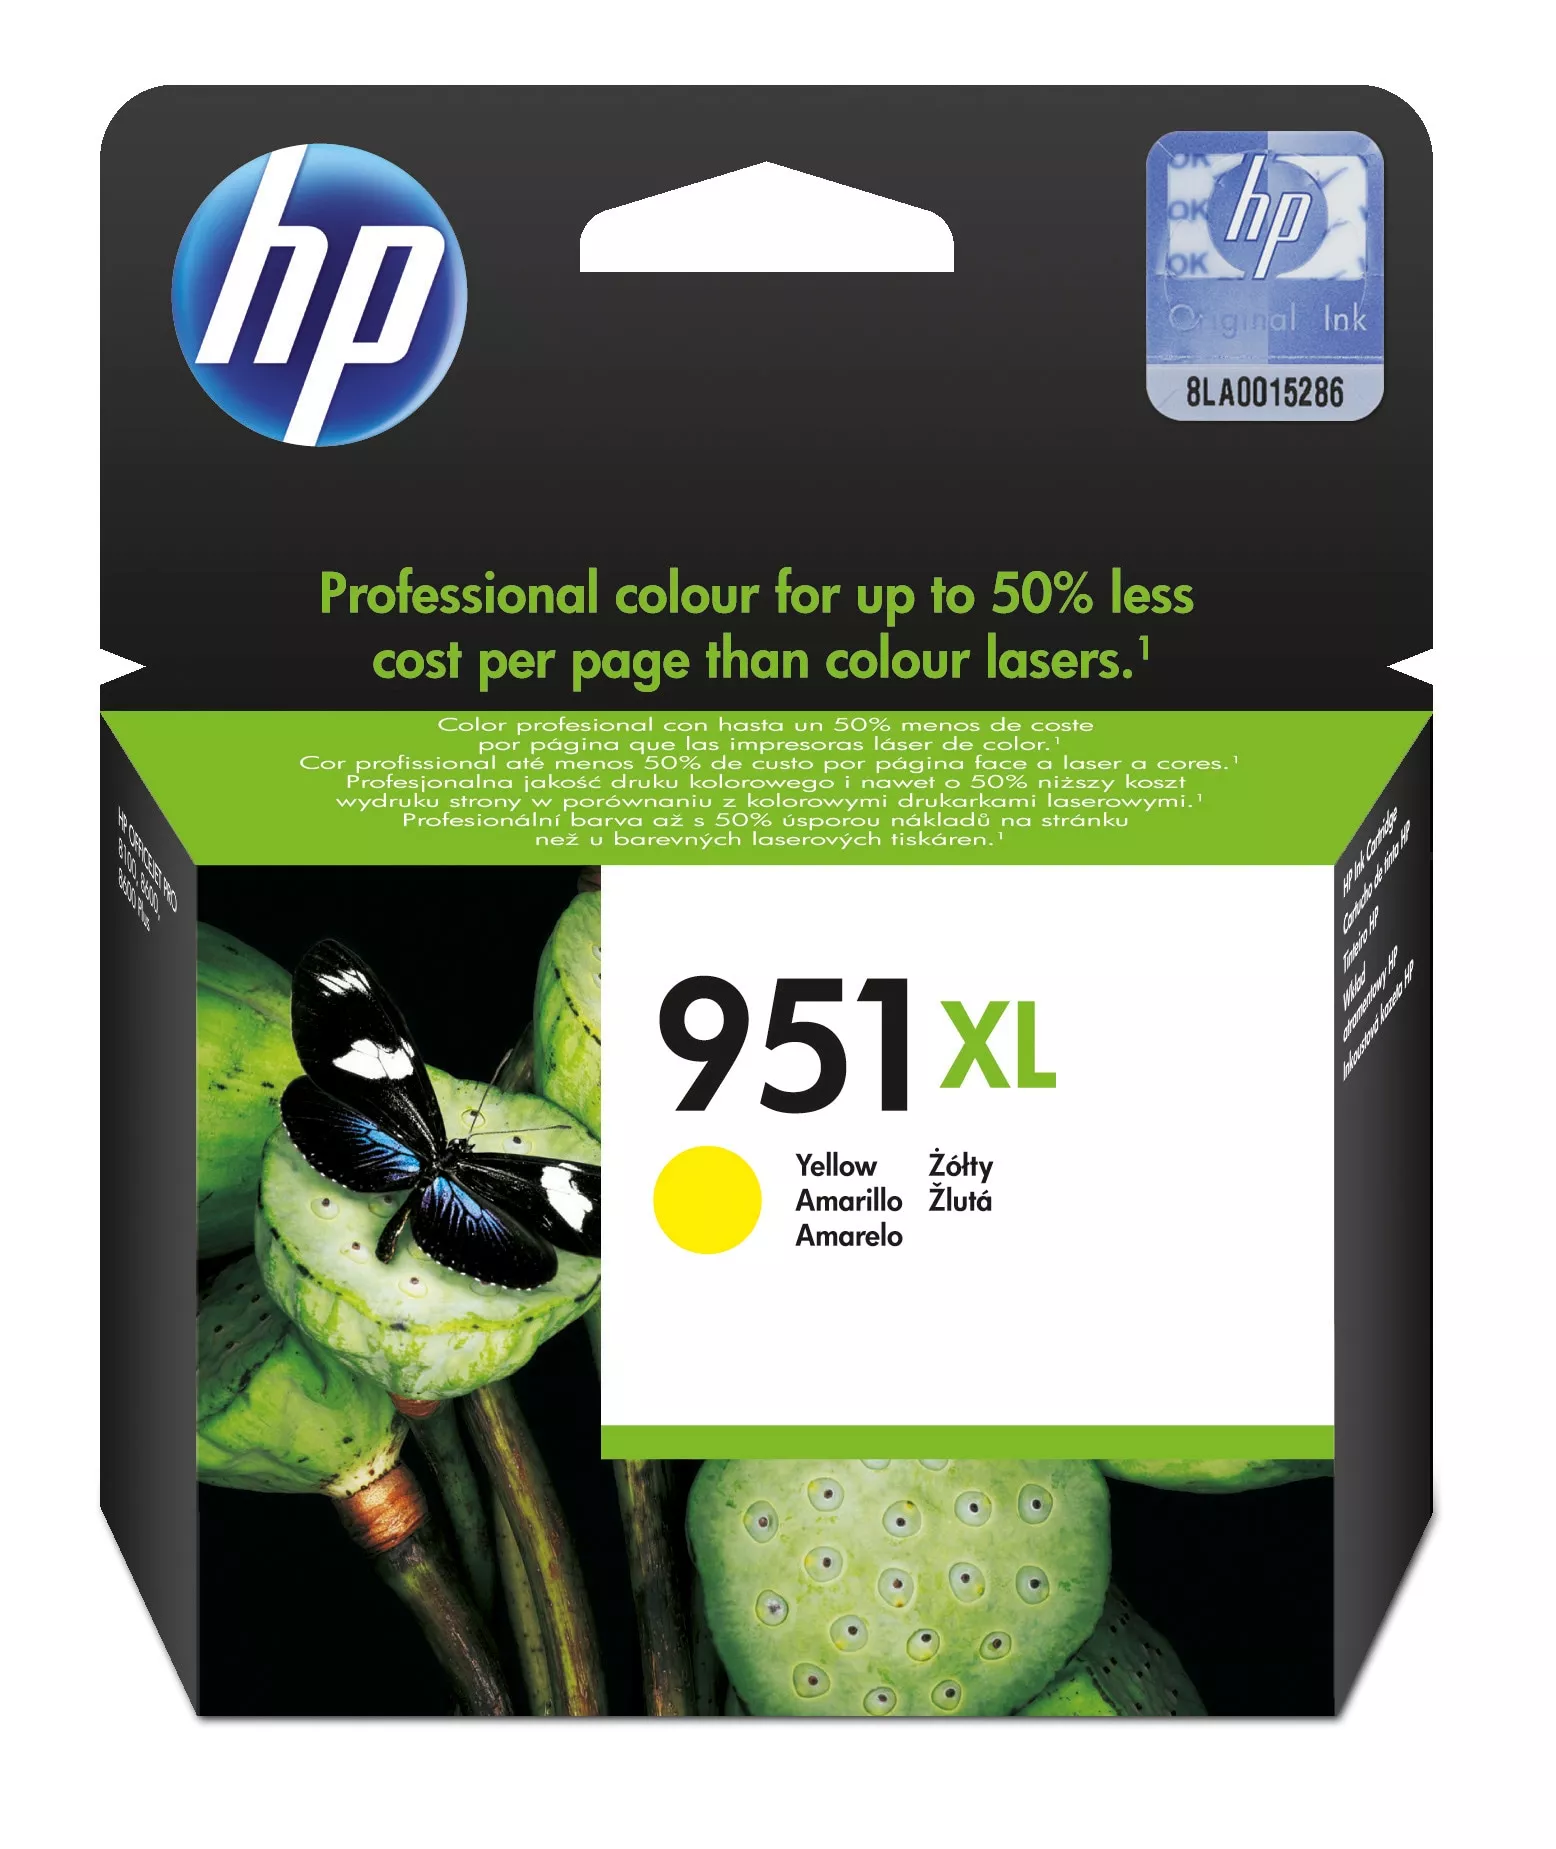 Achat HP 951XL original Ink cartridge CN048AE BGX yellow high au meilleur prix